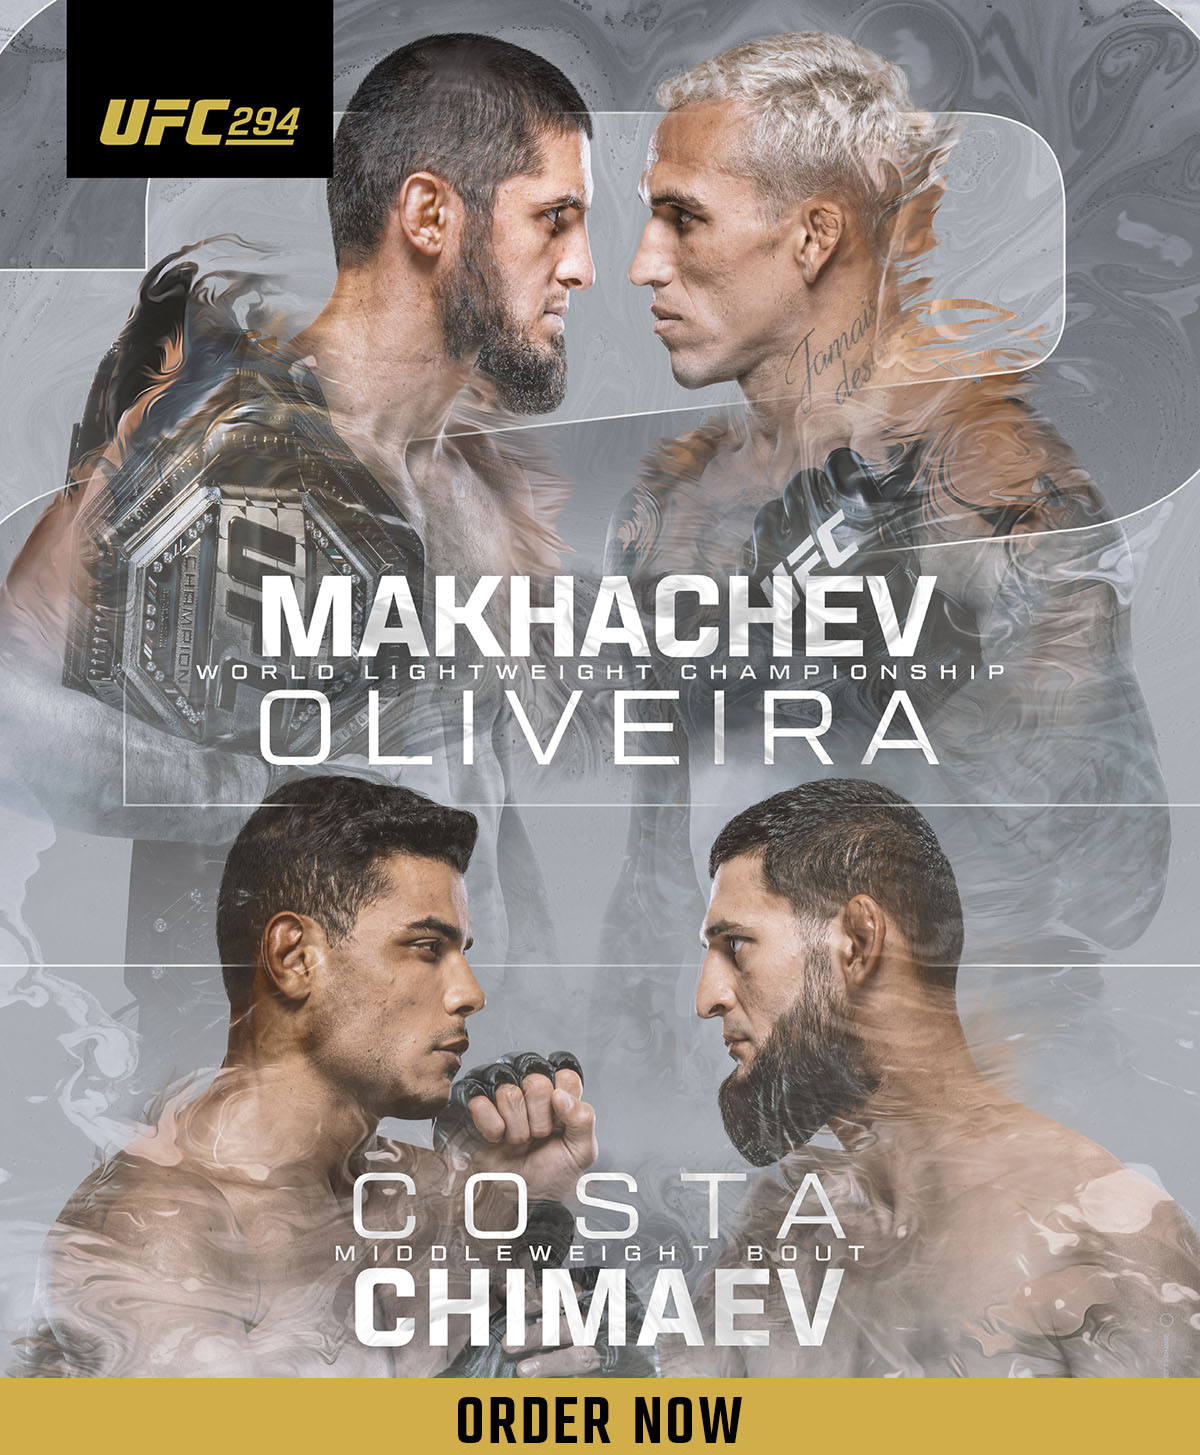 Order UFC 294: Makhachev vs Oliveira 2